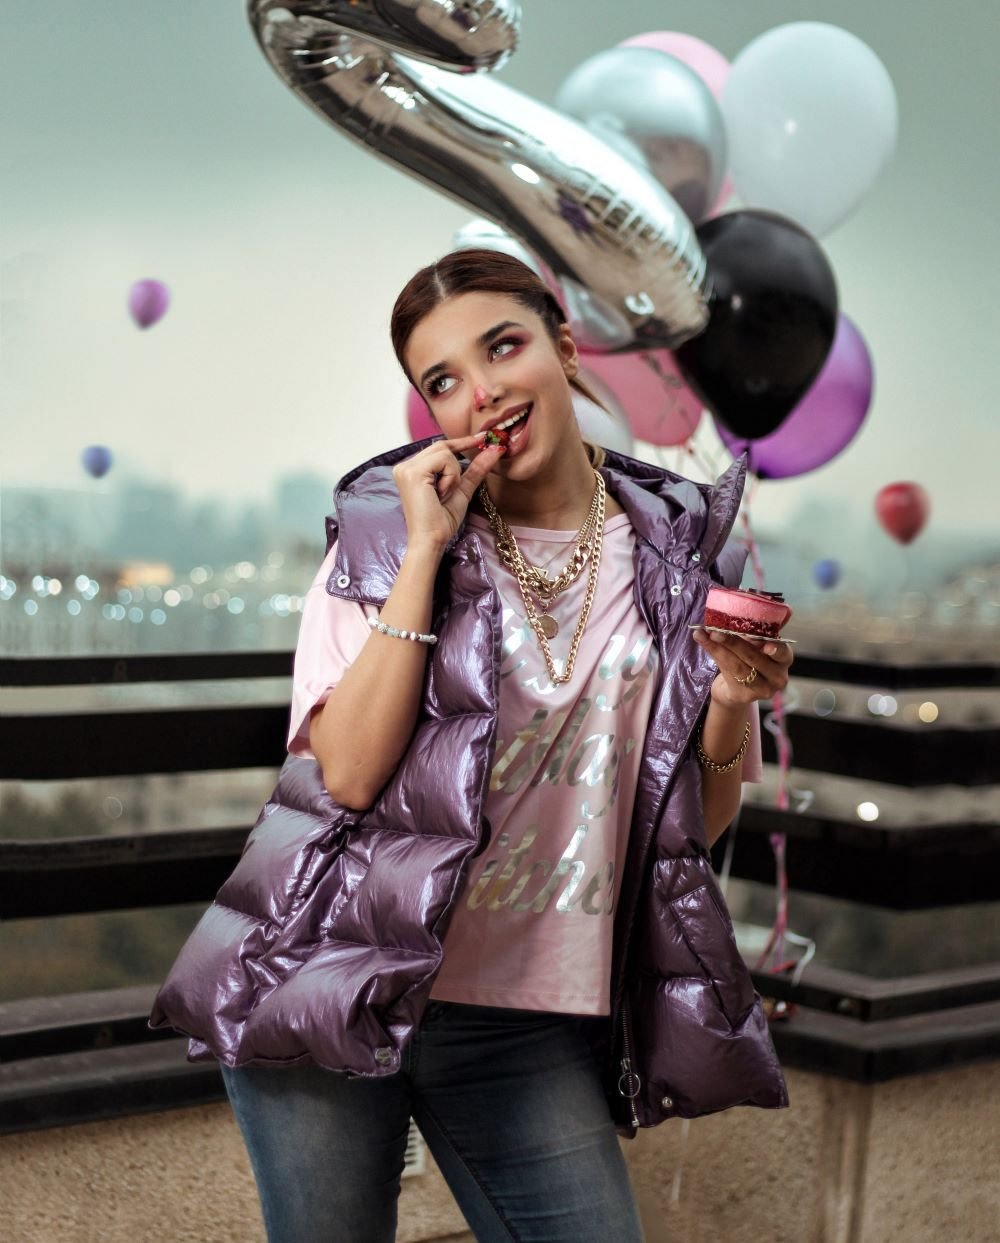 Garota segurando balões de festa comendo um doce.